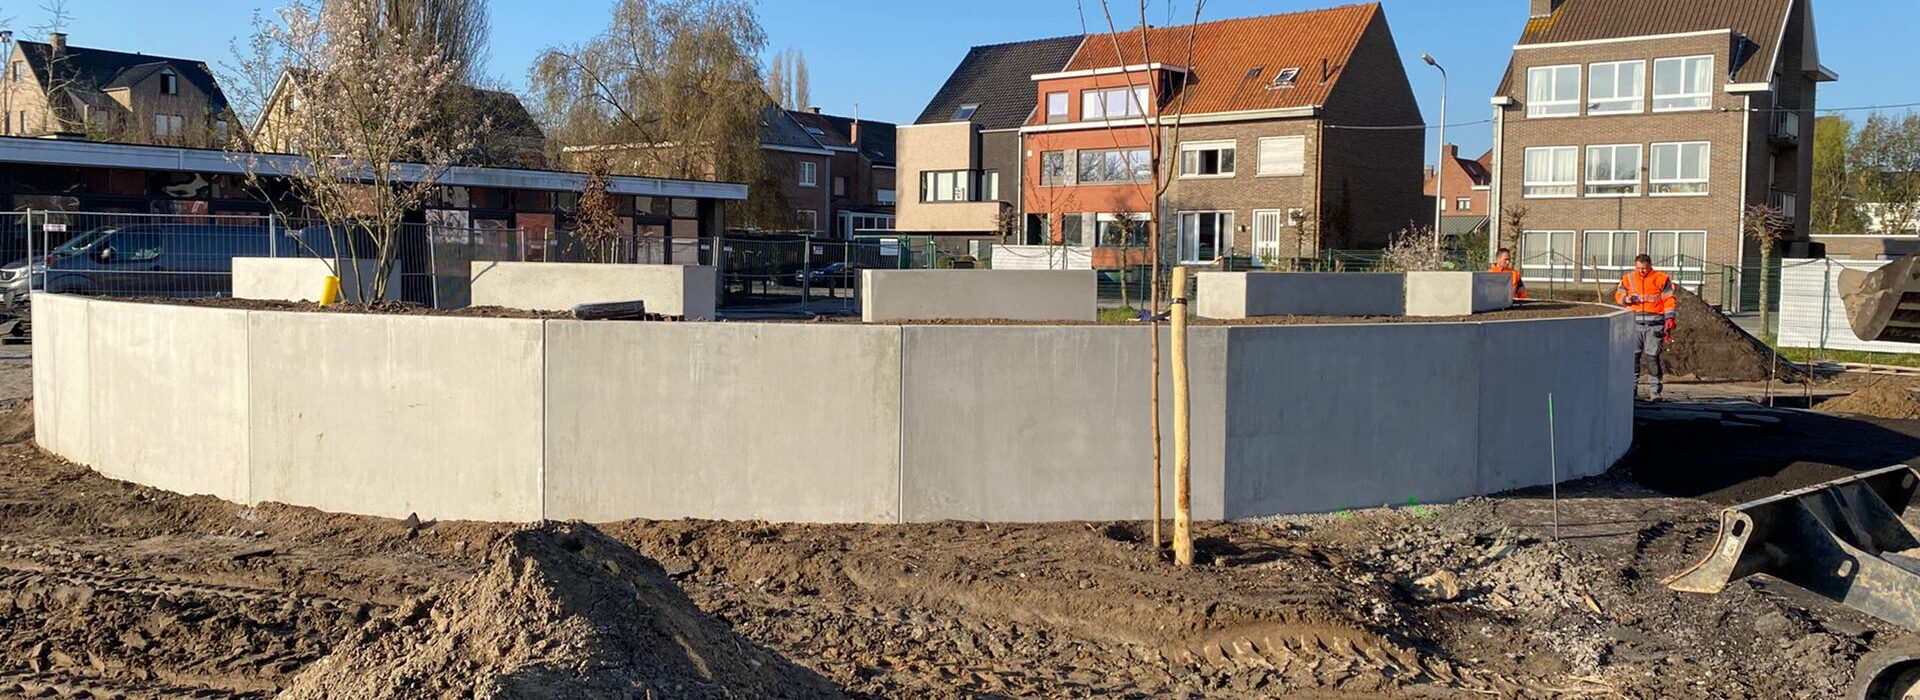 Bosch Beton - Keerwanden voor eerste duurzame schoolplein in Kortrijk (België)